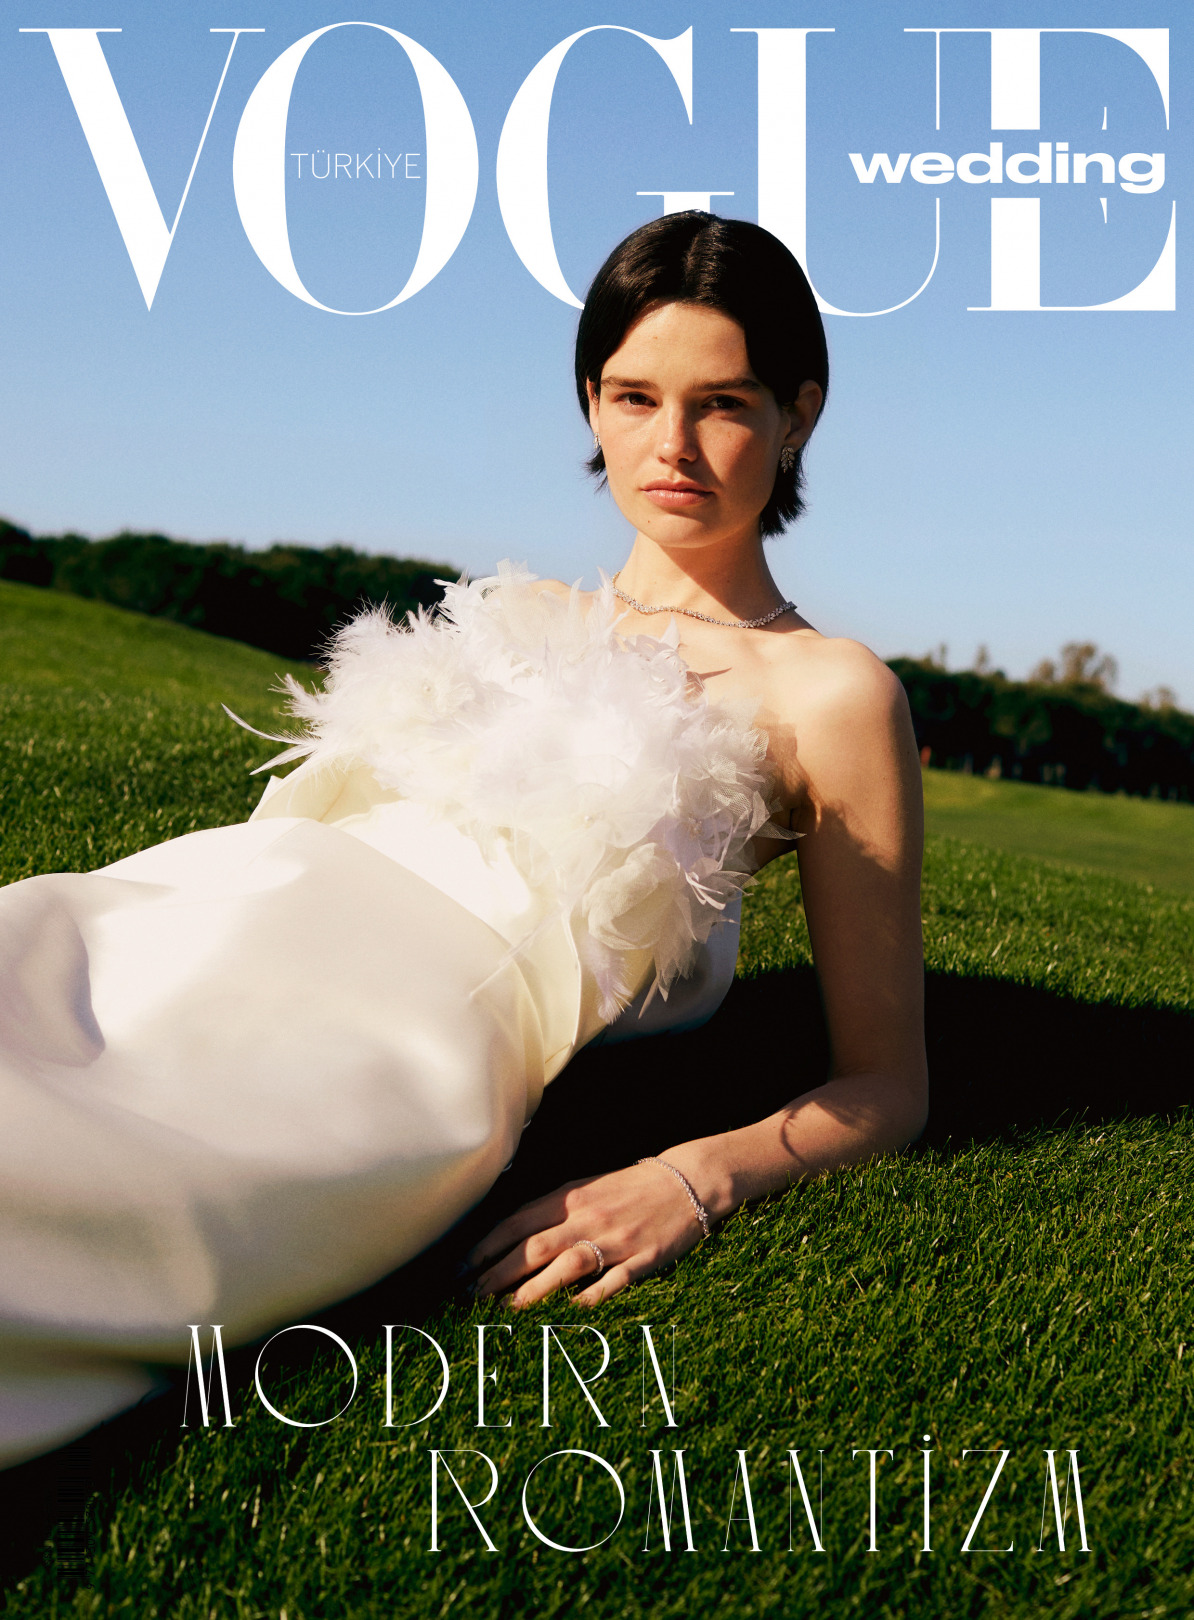 Vogue Türkiye Wedding Çıktı!